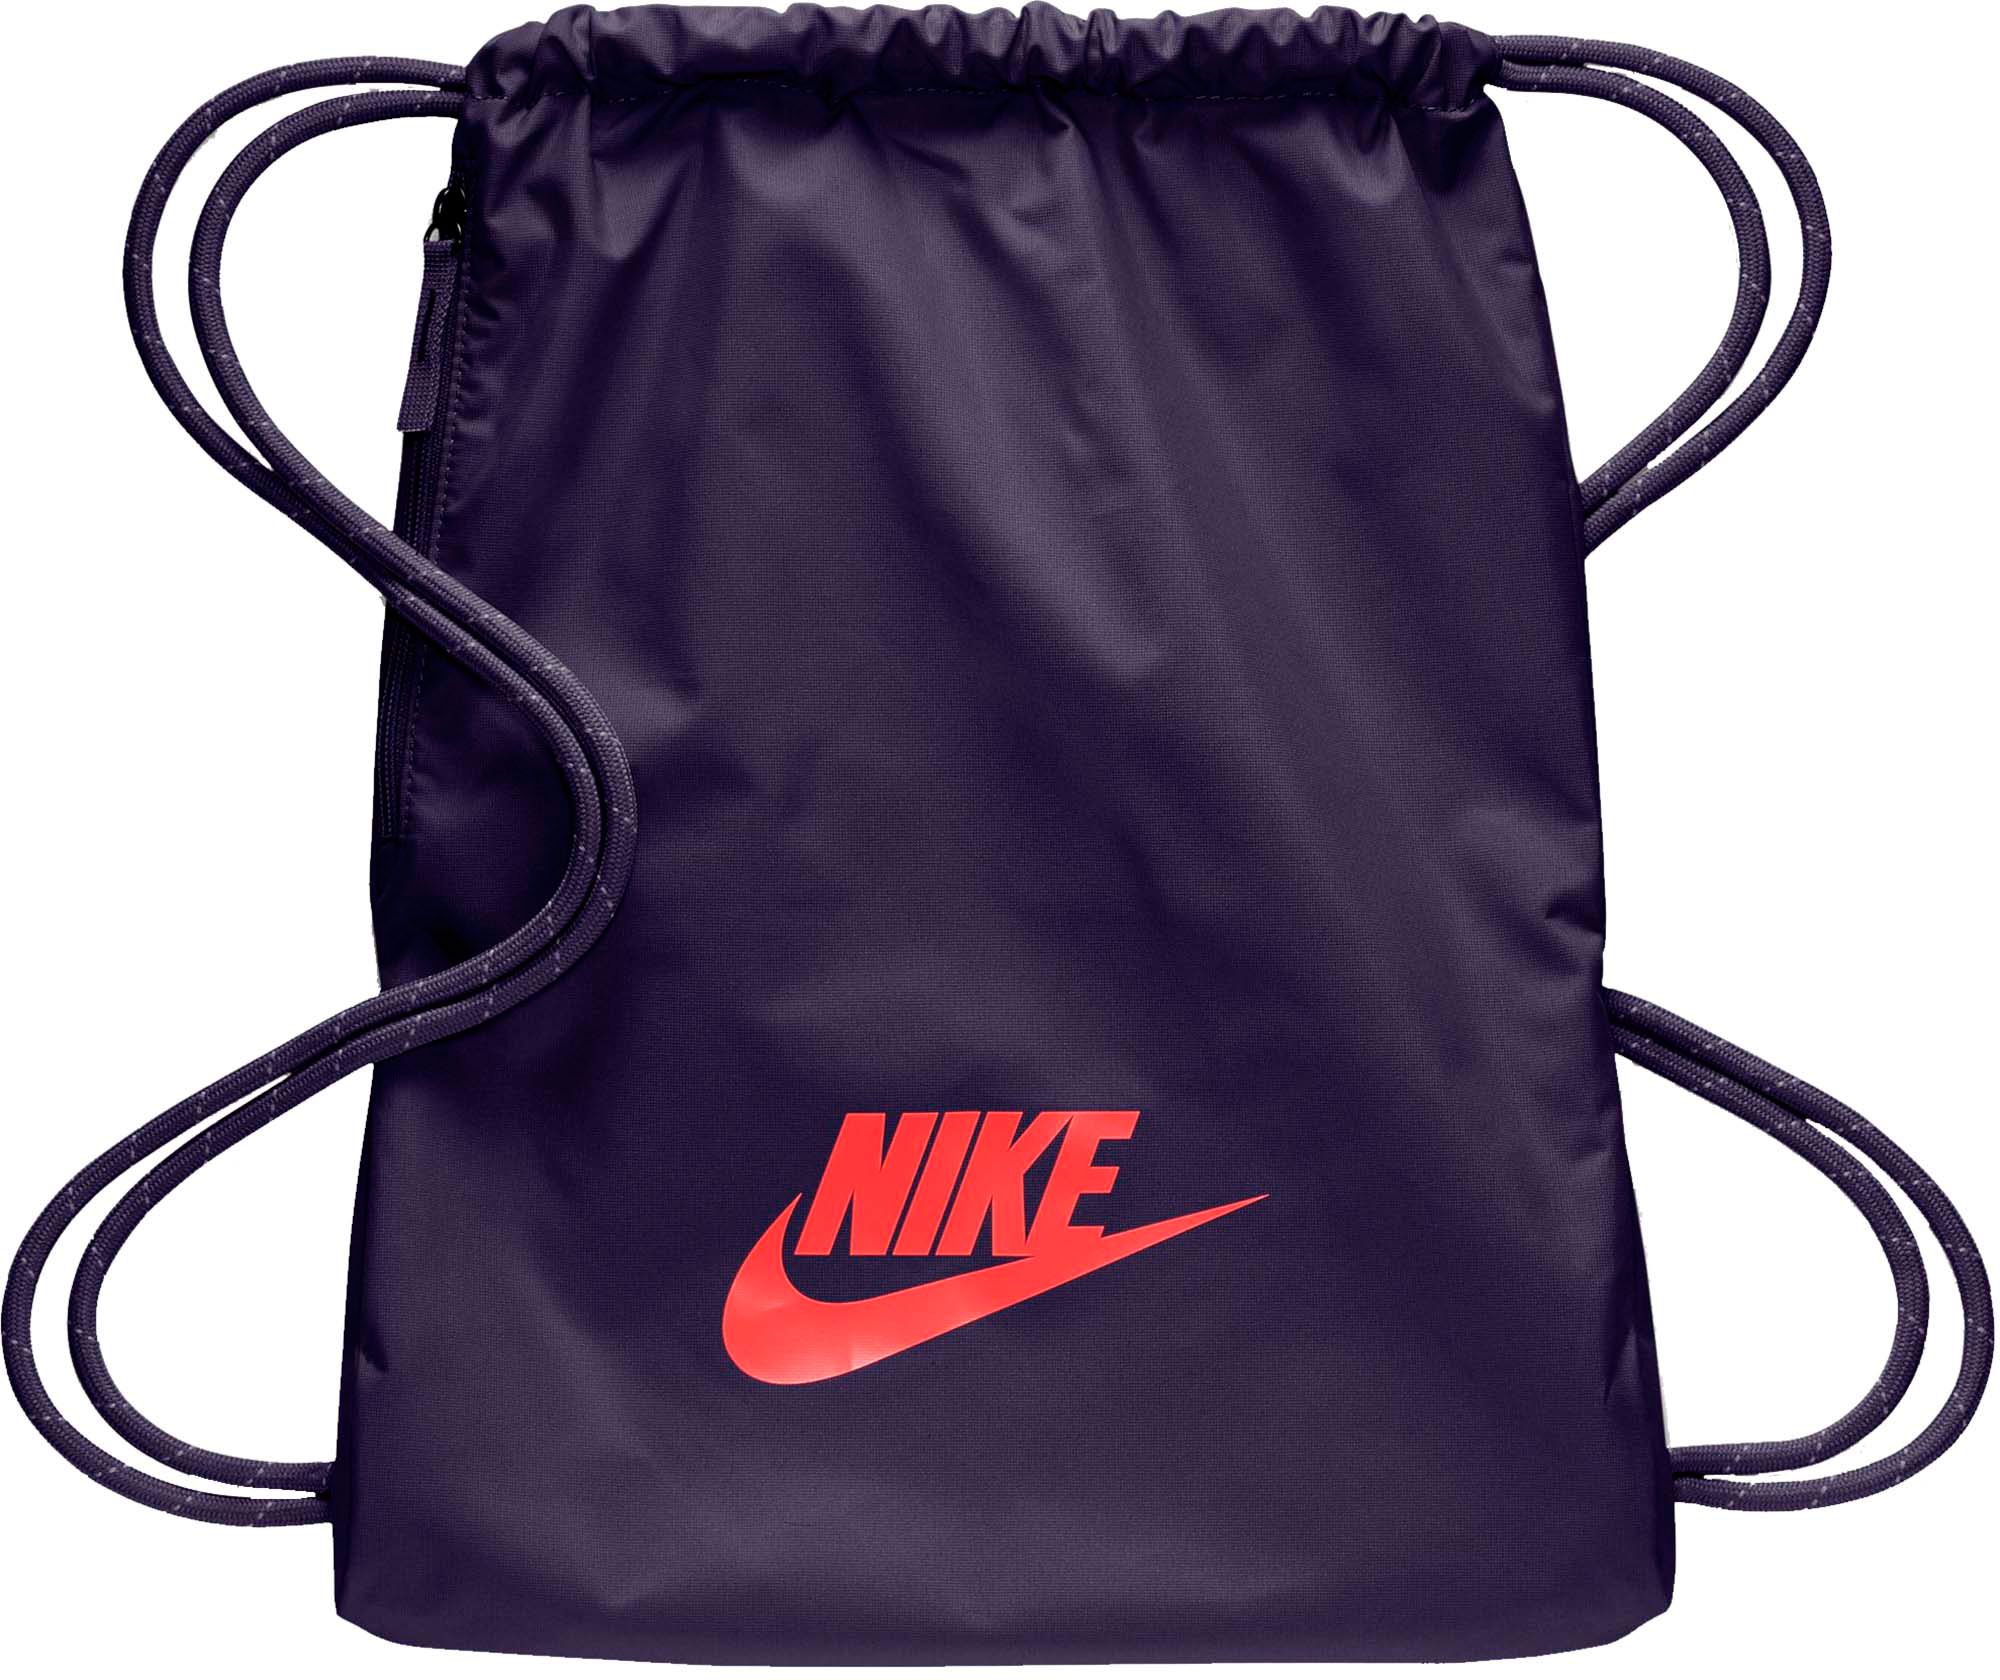 nike gym sack with zipper